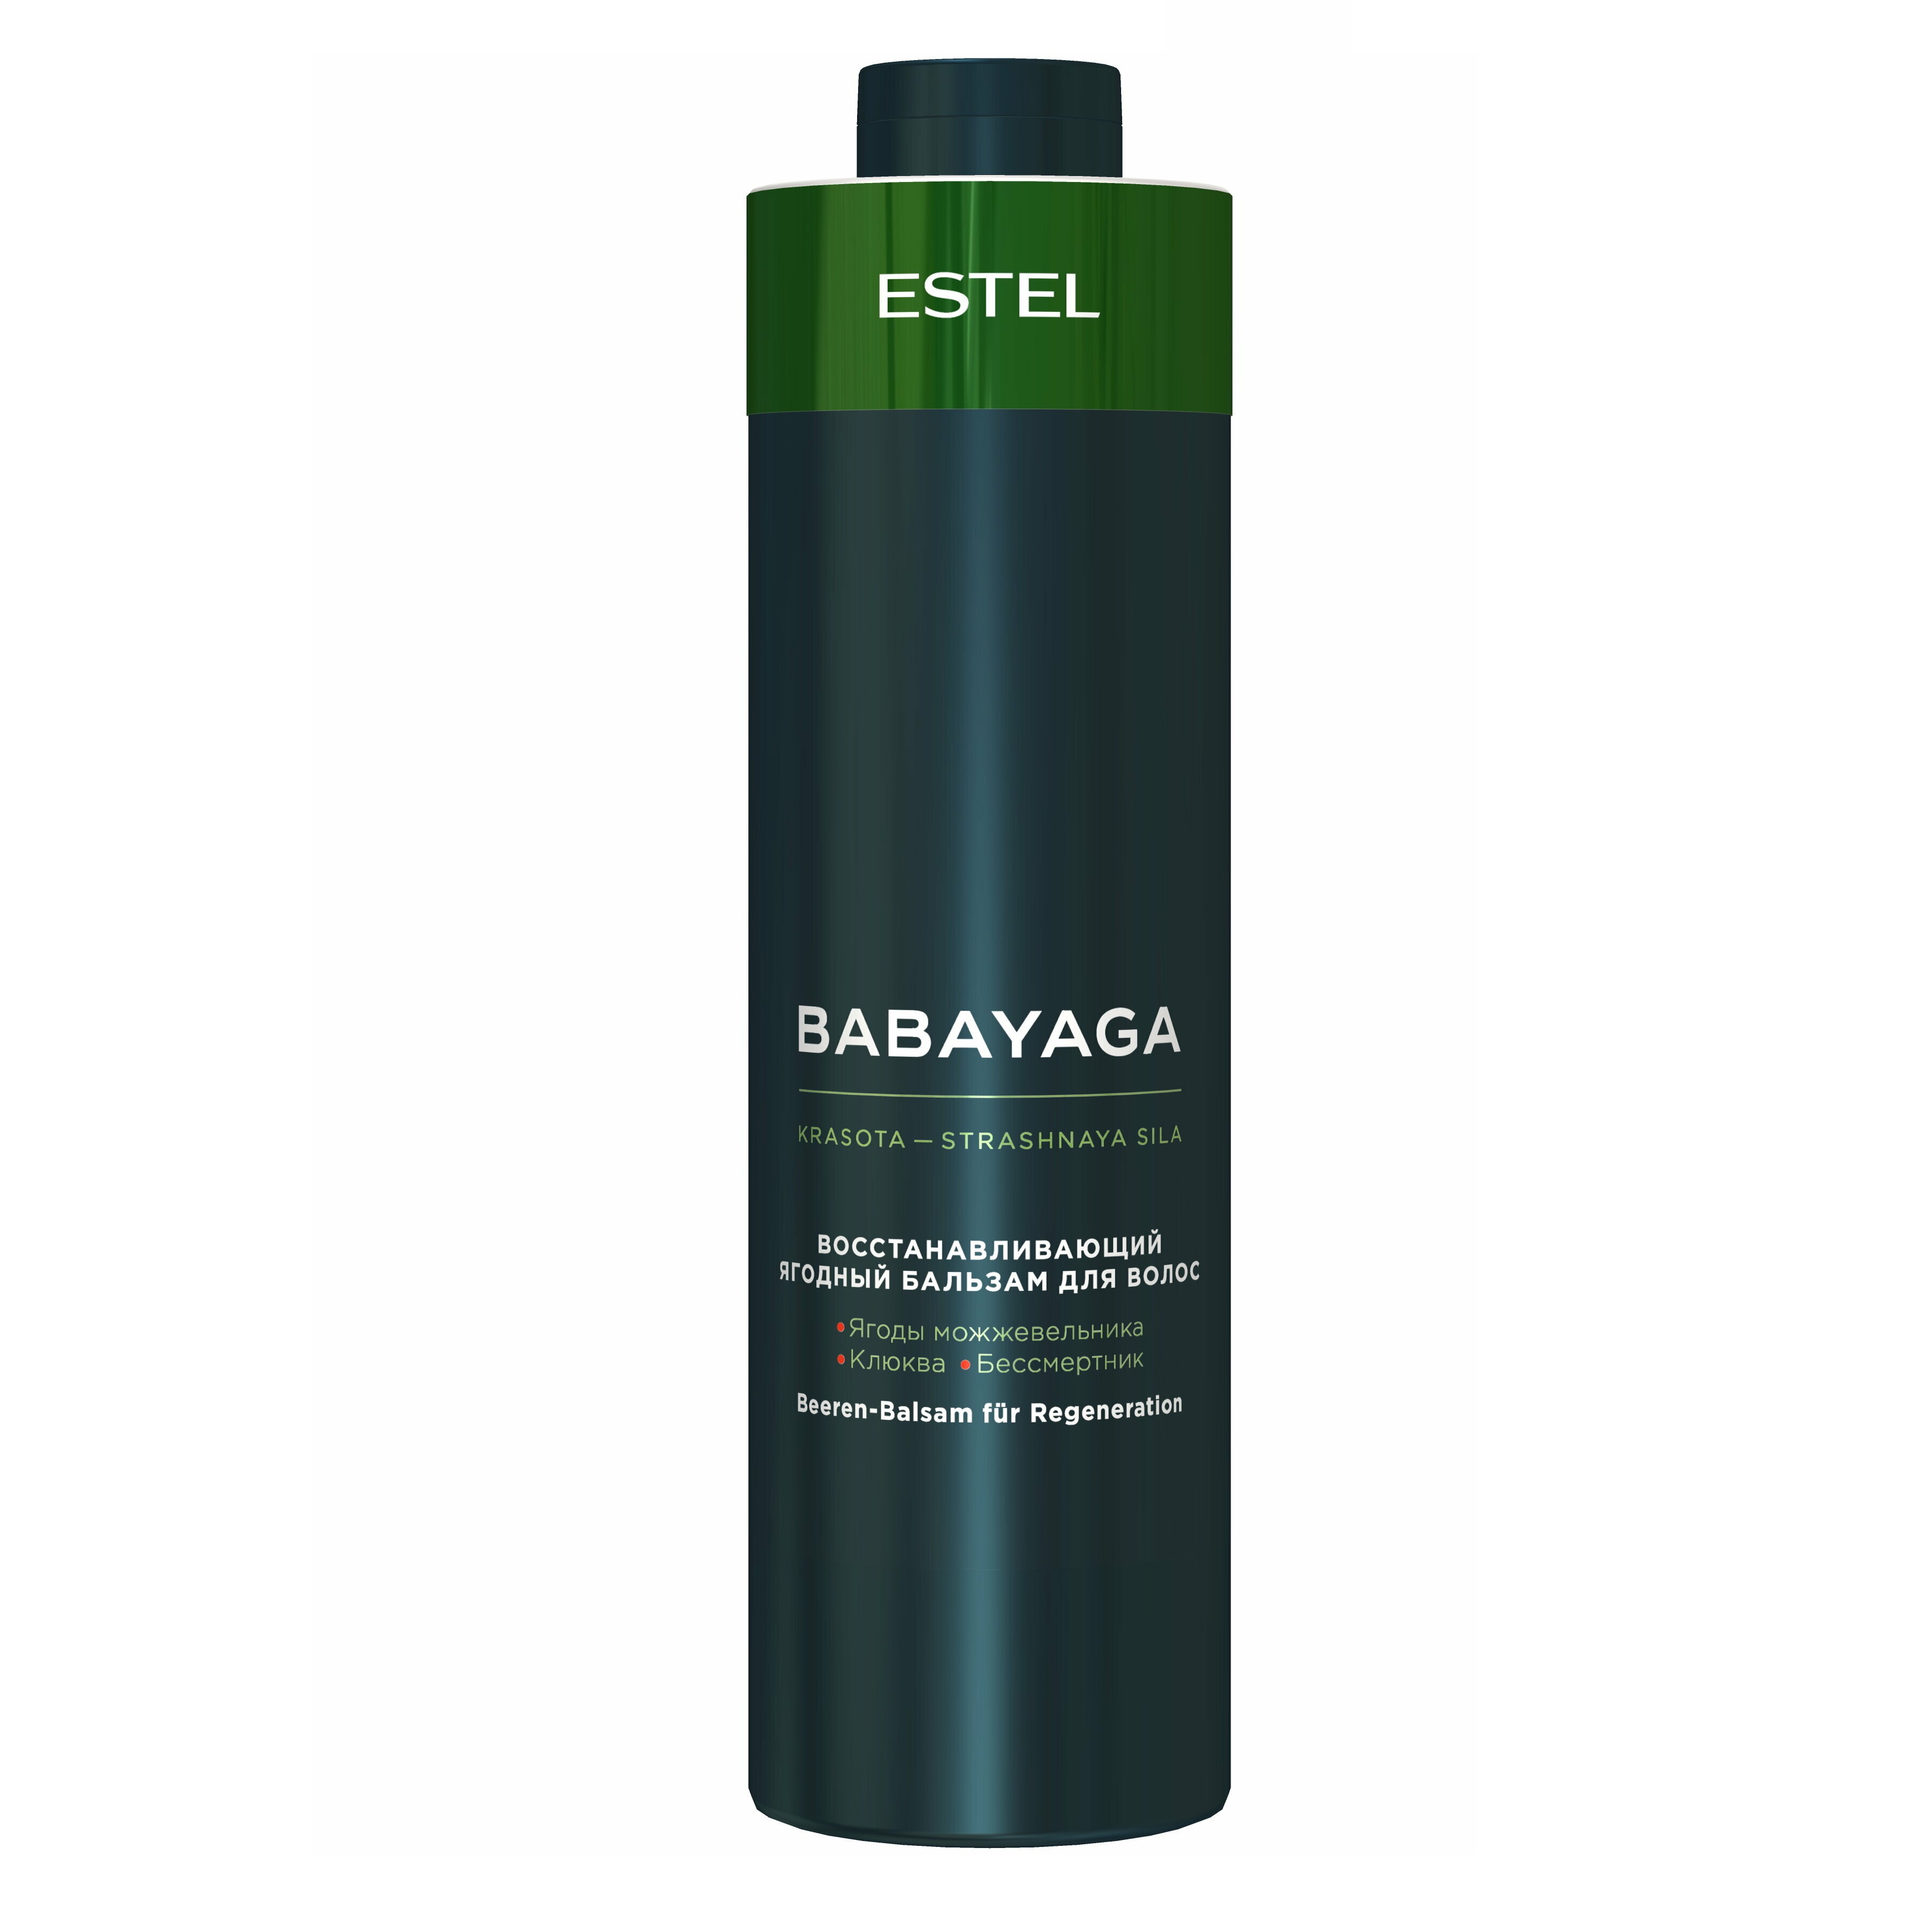 ESTEL, Восстанавливающий ягодный бальзам для волос Babayaga, 1000 мл.